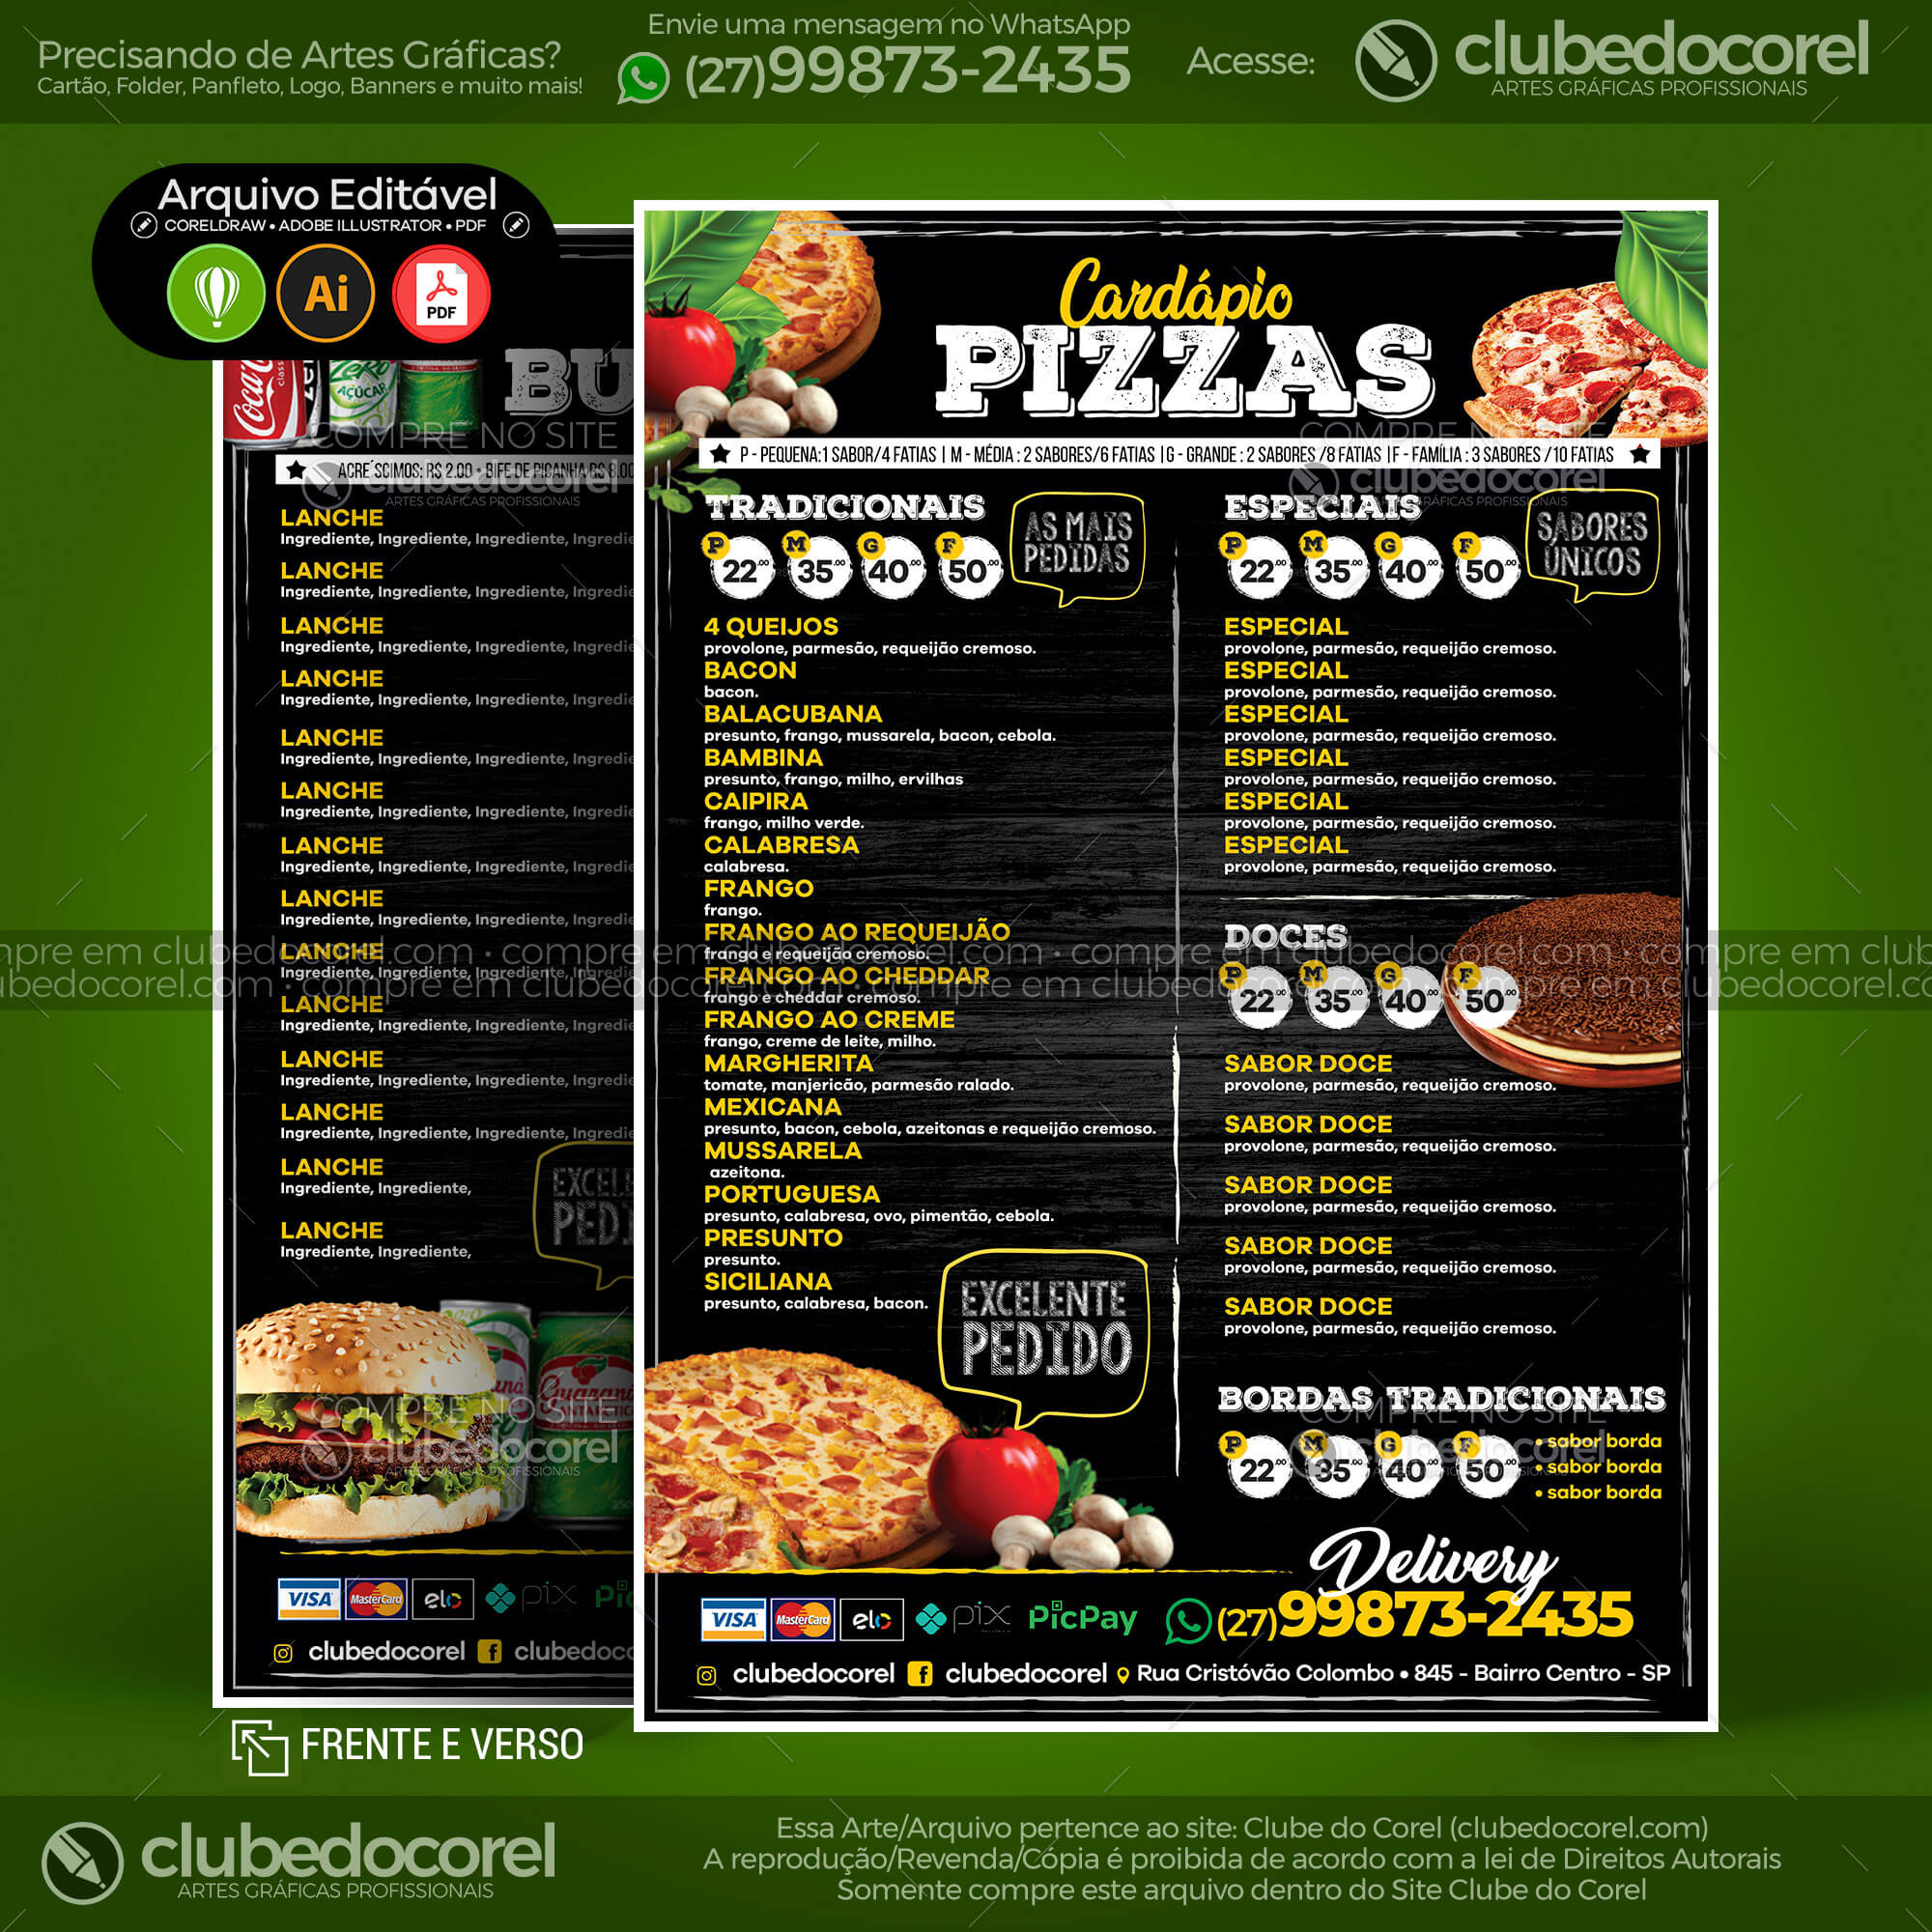 Cardápio Pizzaria #02 - Pizza e Hamburguer [CDR AI PDF] | Clube do Corel